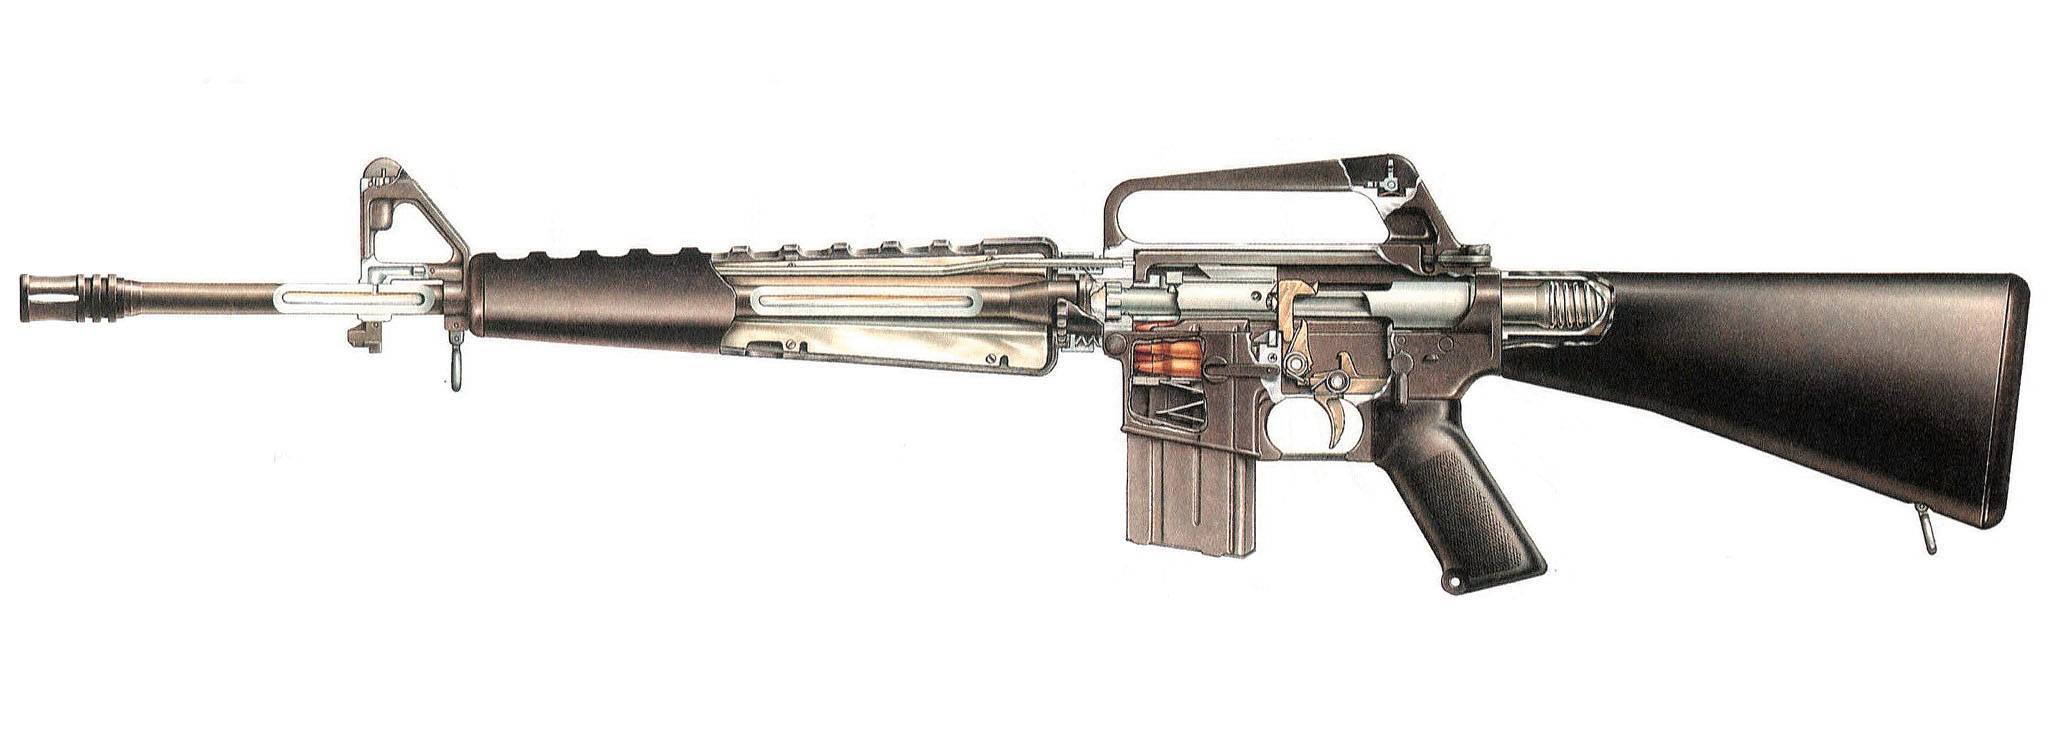 М1 garand - американская самозарядная винтовка второй мировой войны